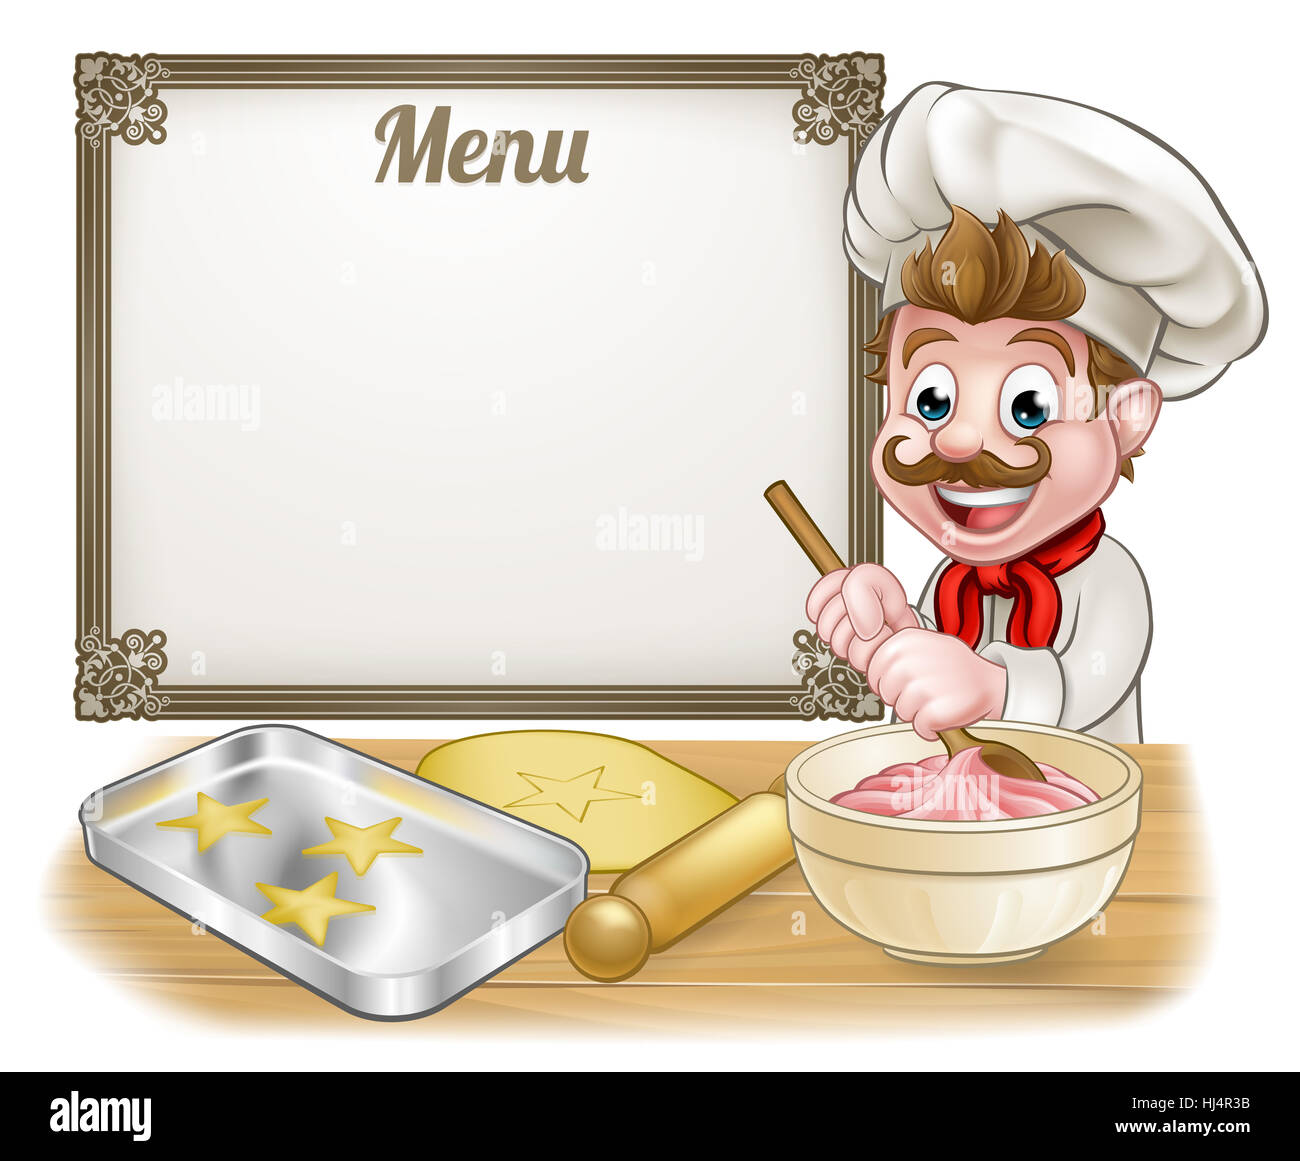 Boulanger ou pâtissier personnage avec un menu Se connecter à l'arrière-plan Banque D'Images